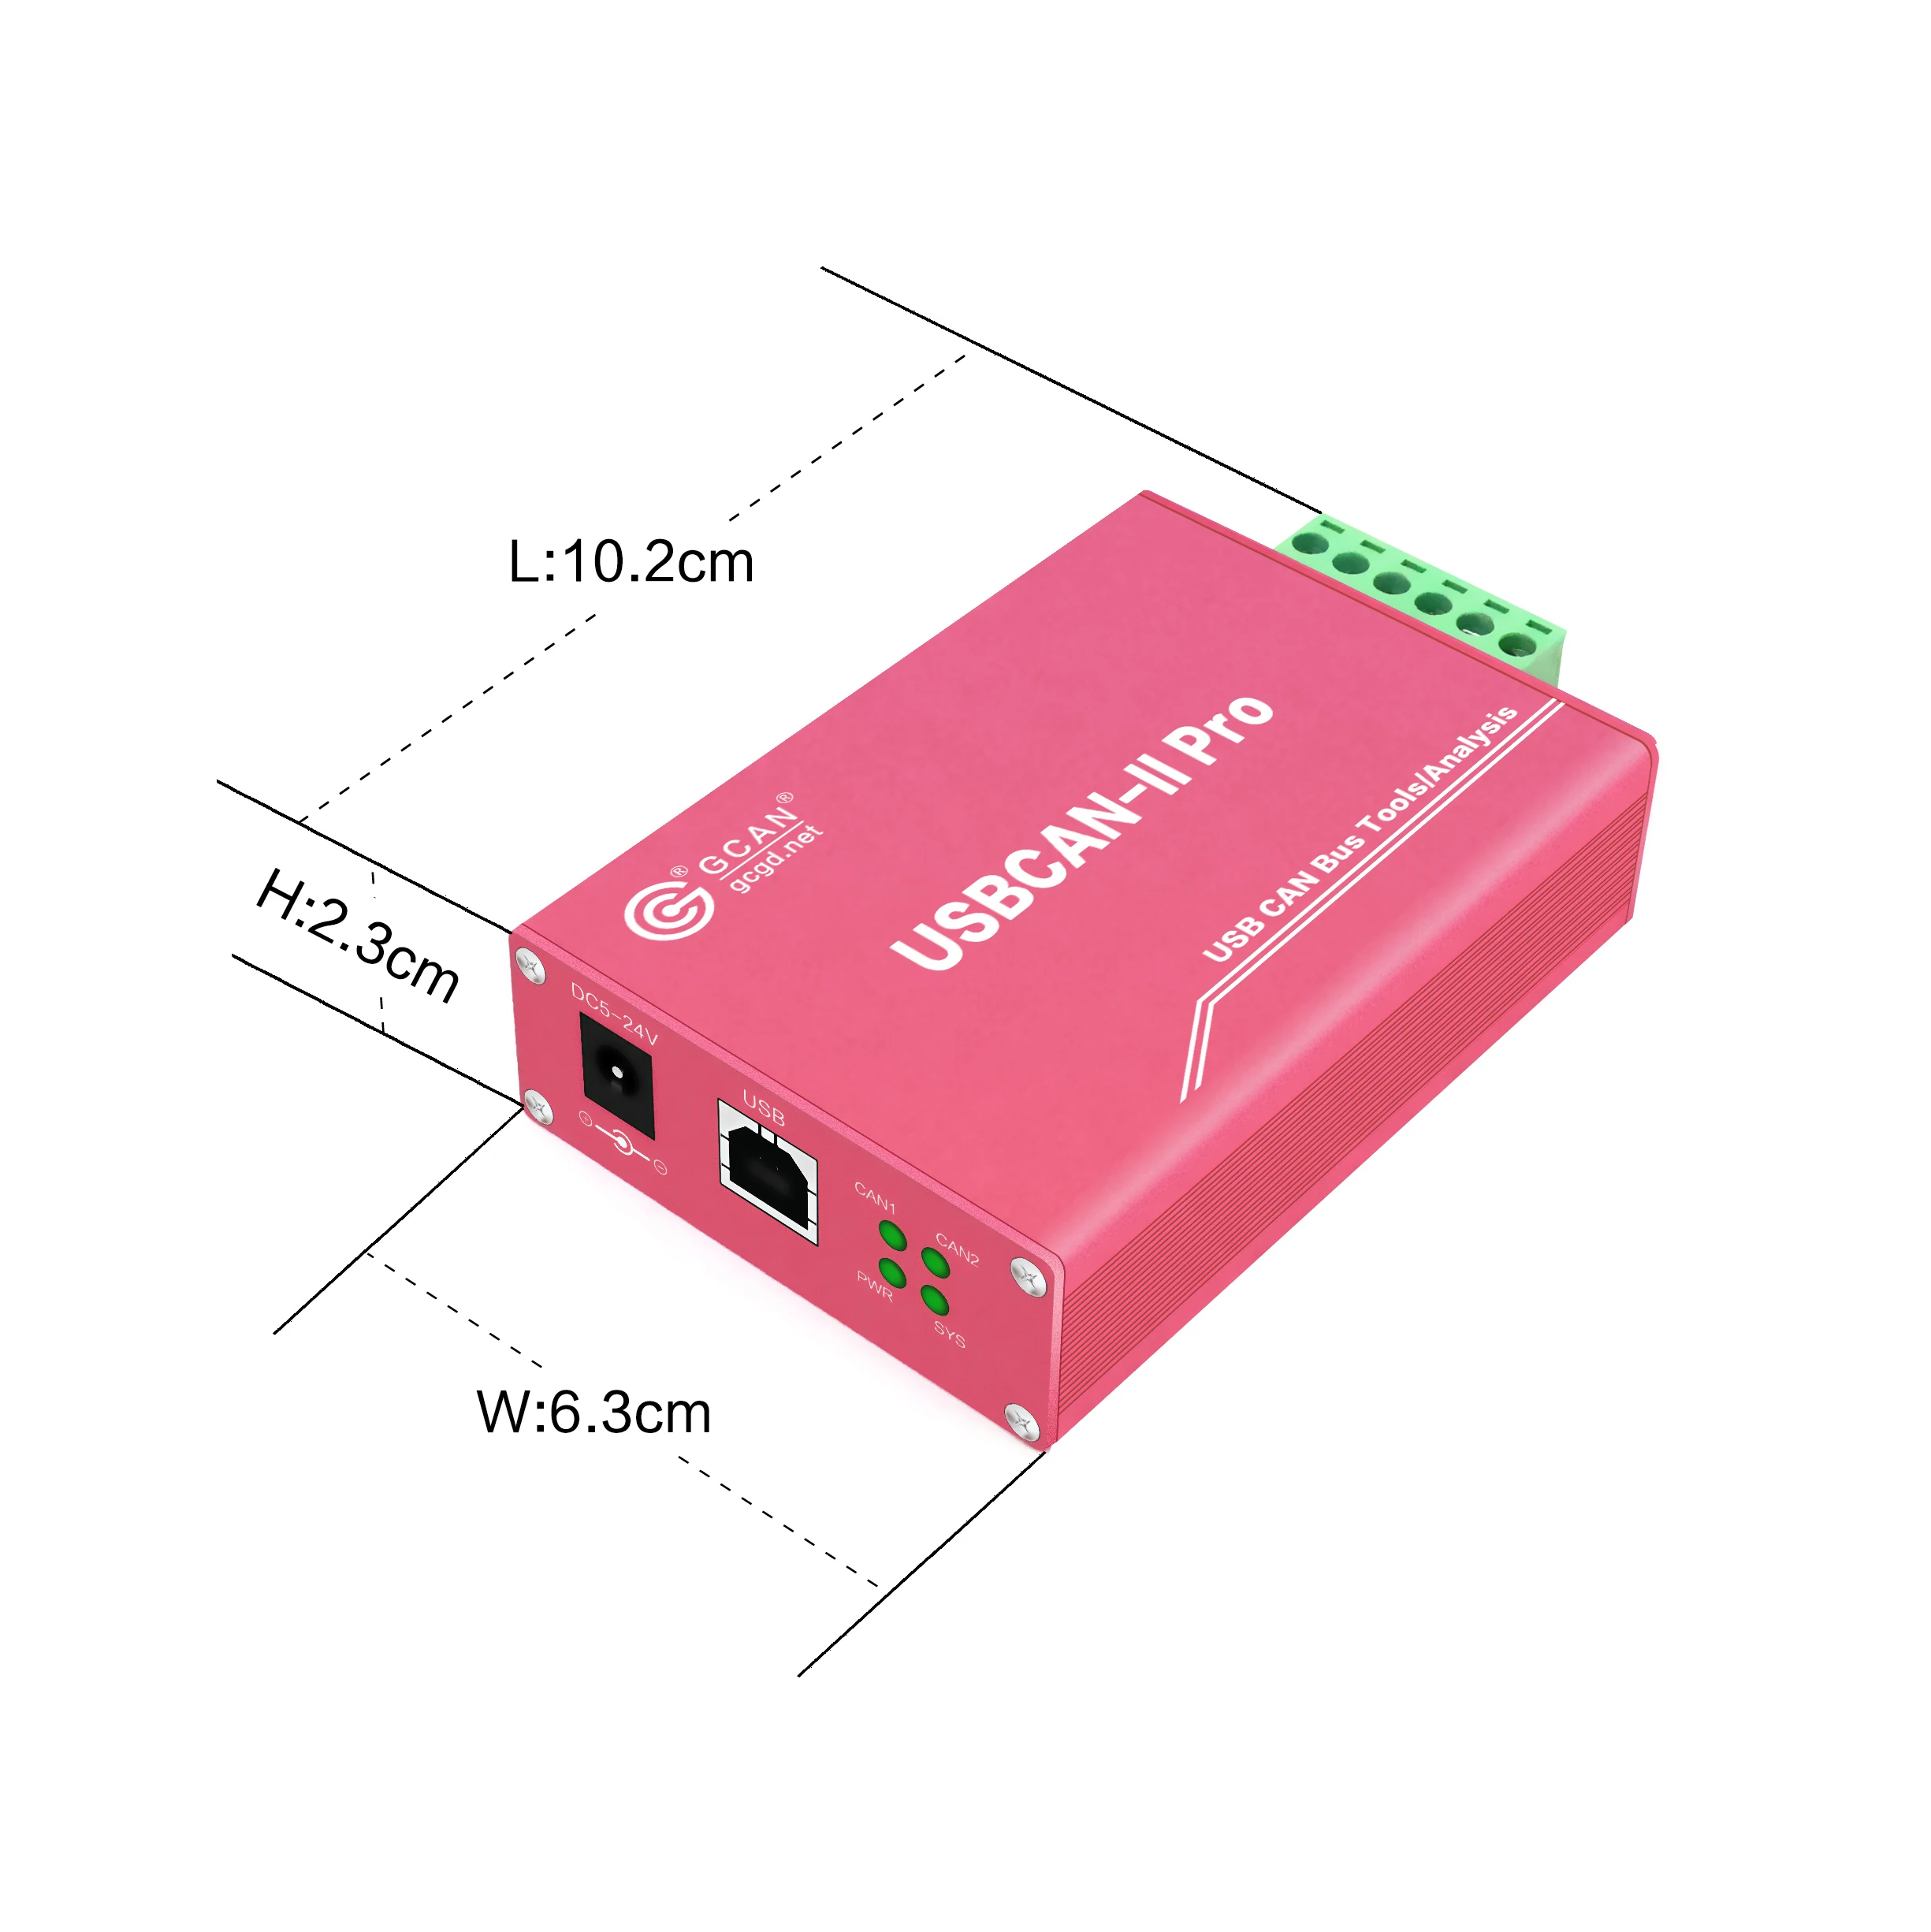 

USBCAN II Pro двухканальный анализатор адаптер Can bus приемник данных передатчик с двумя каналами поддержка ECAN инструменты программное обеспечени...